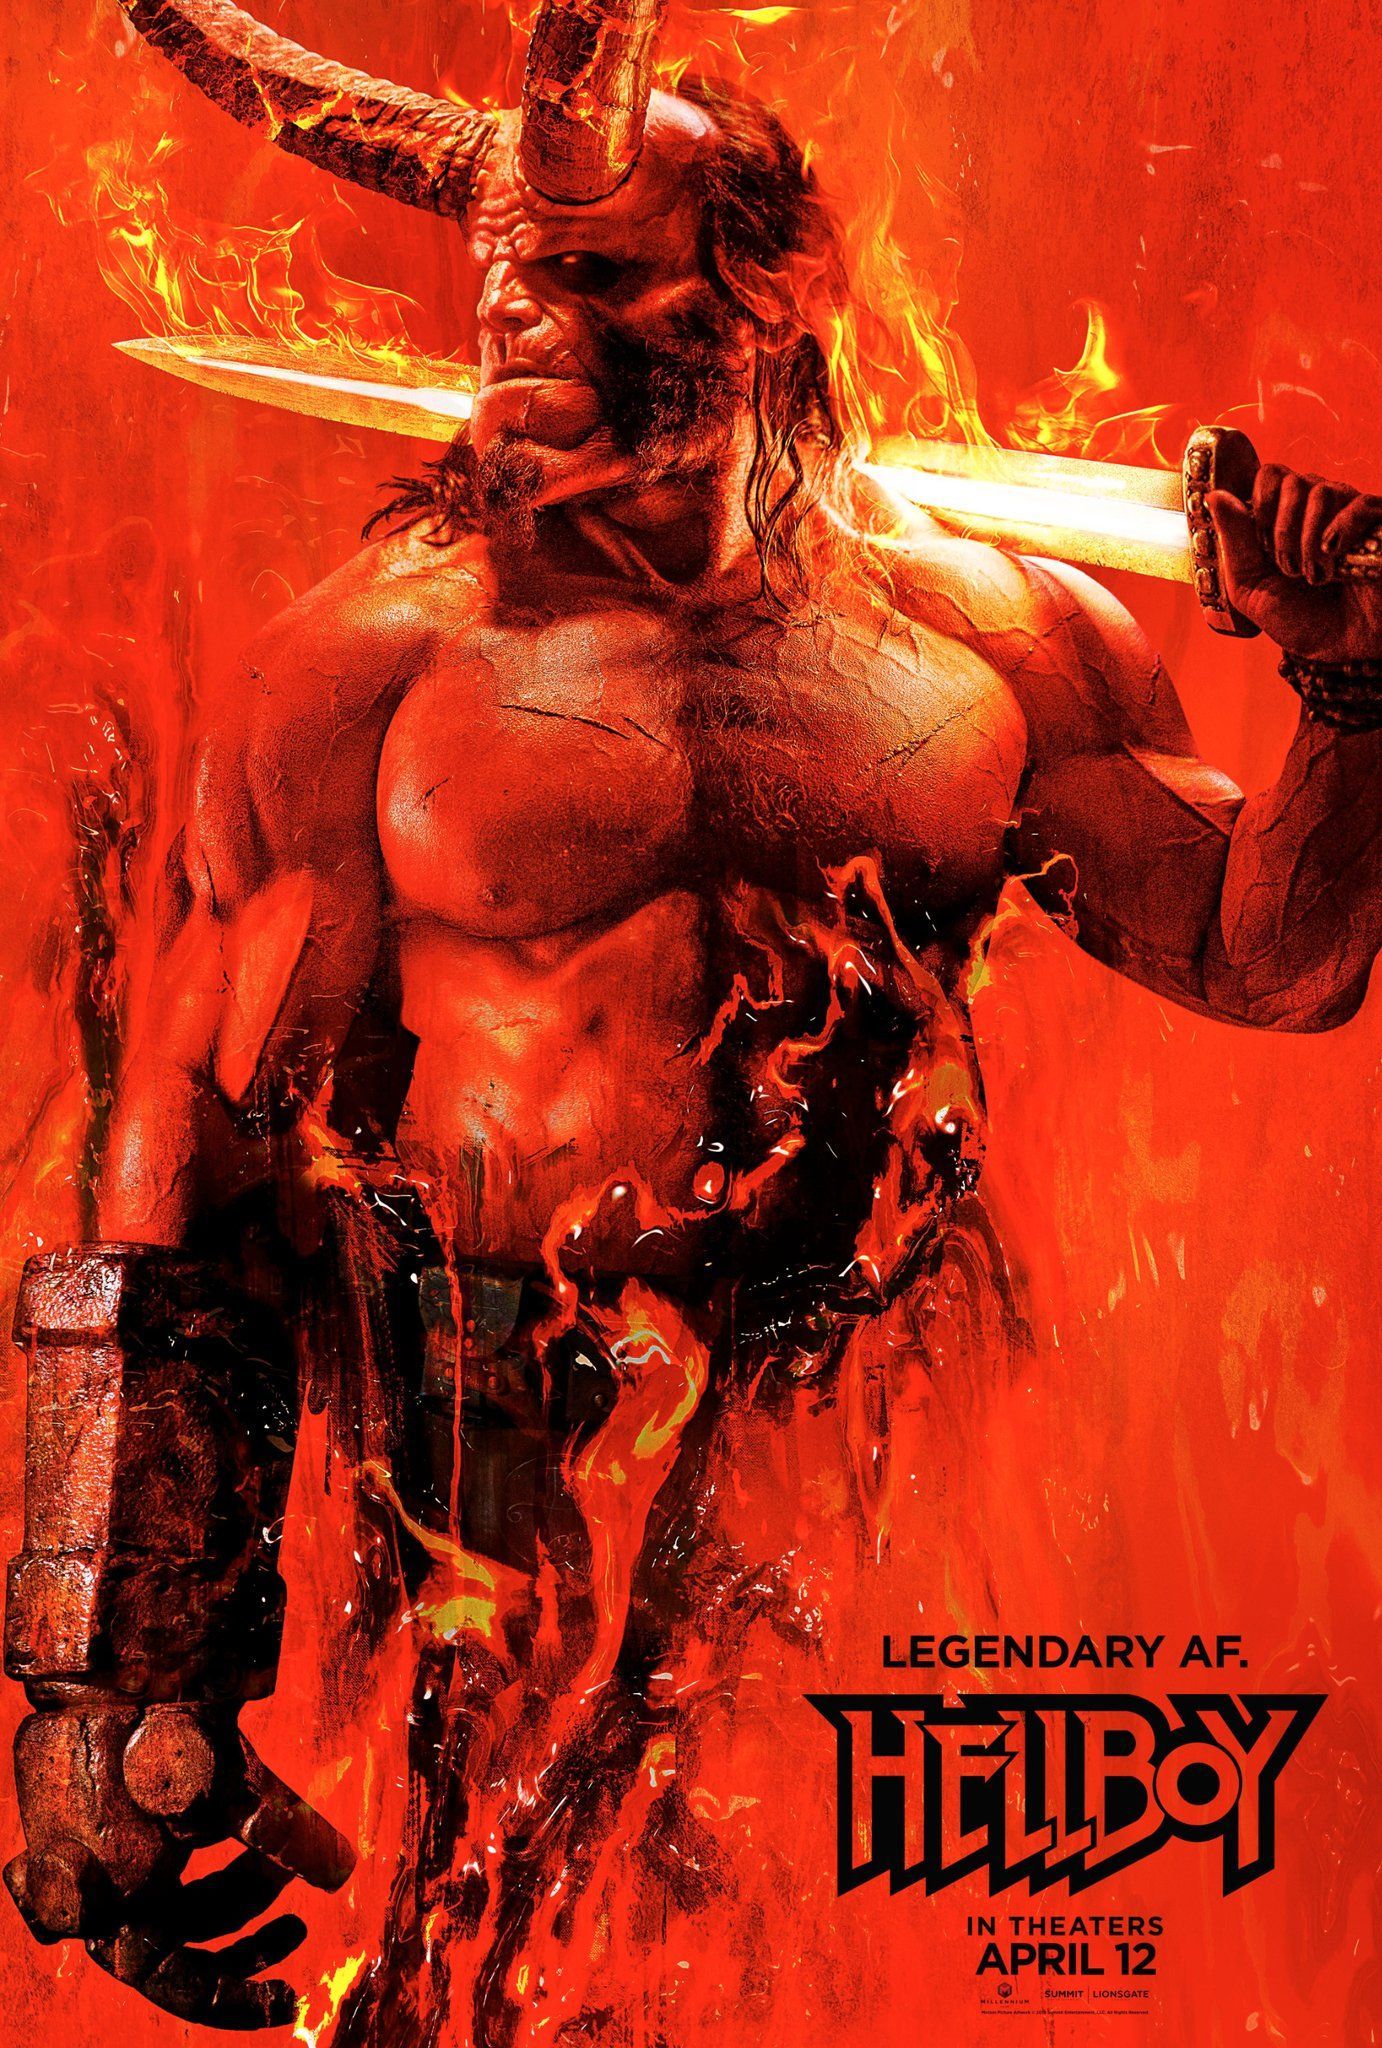 Hellboy filmi için umut verici bir poster daha yayınlandı